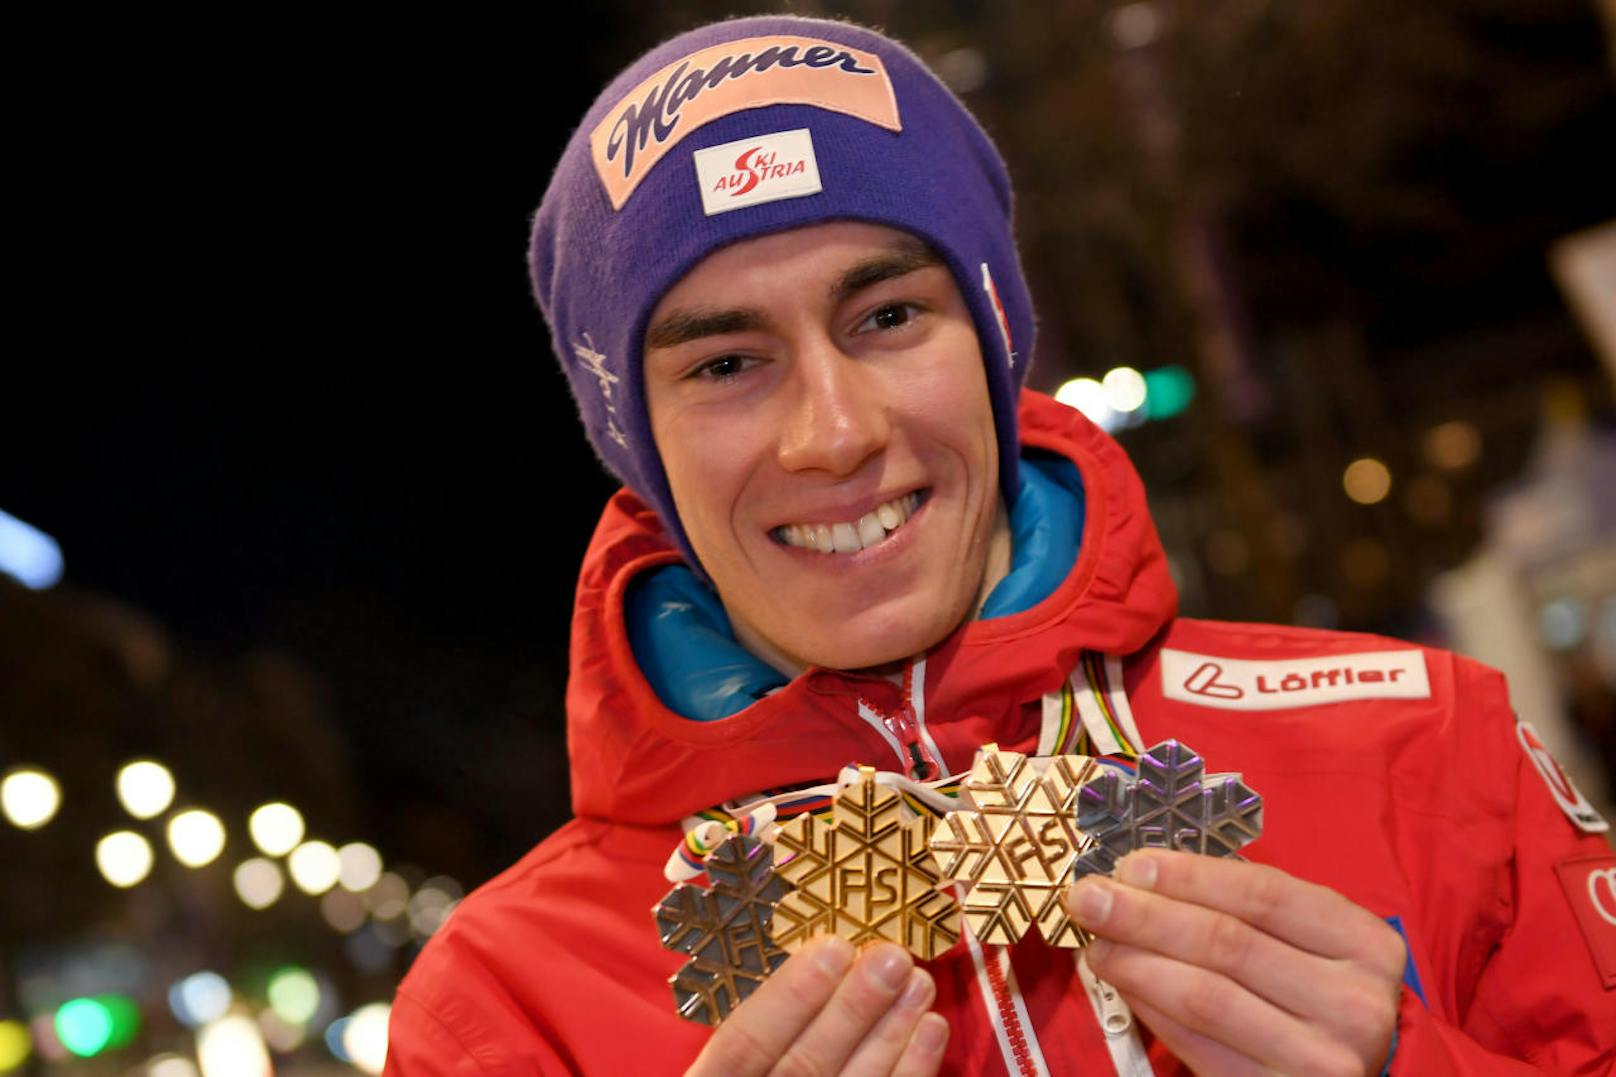 Bei der Nordischen Ski-WM in Lahti kürte sich Kraft zum ersten österreichischen Doppelweltmeister im Skispringen. Zum Drüberstreuen gab es noch Silber im Mixed-Team und Bronze mit der Mannschaft.